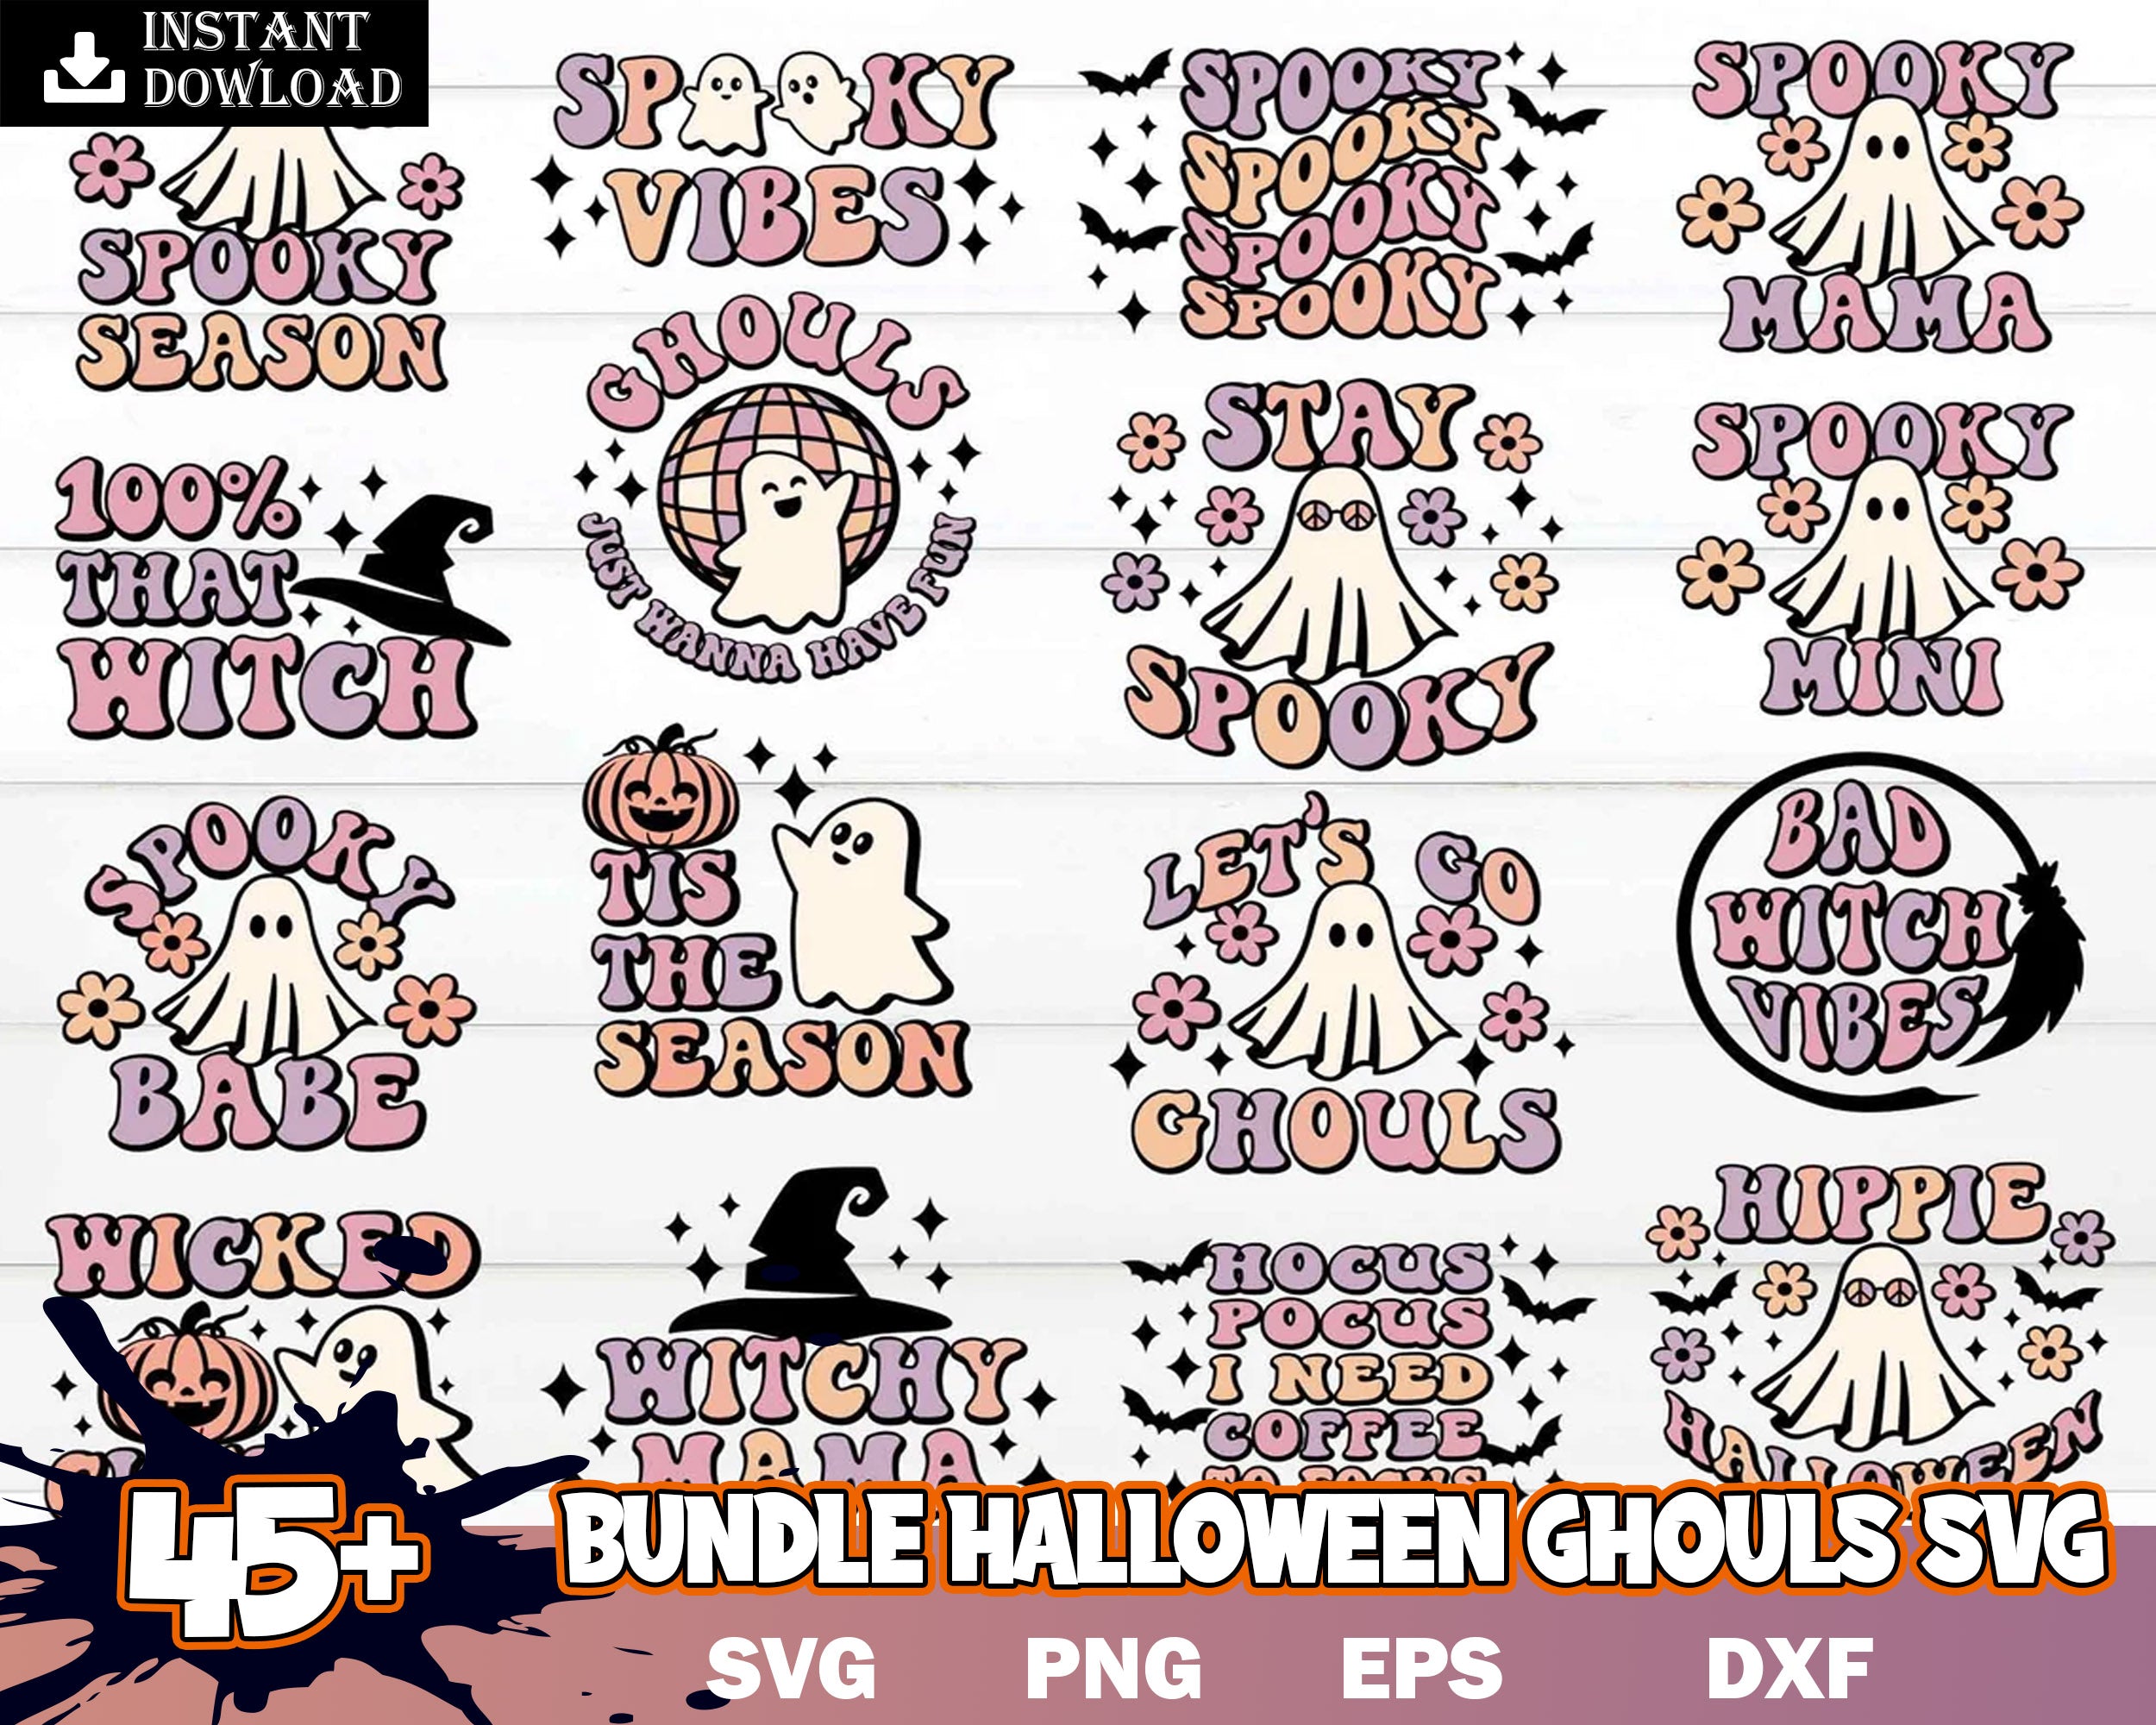 Halloween bundle svg, Halloween ghouls svg, images, Digital file, Digital download.